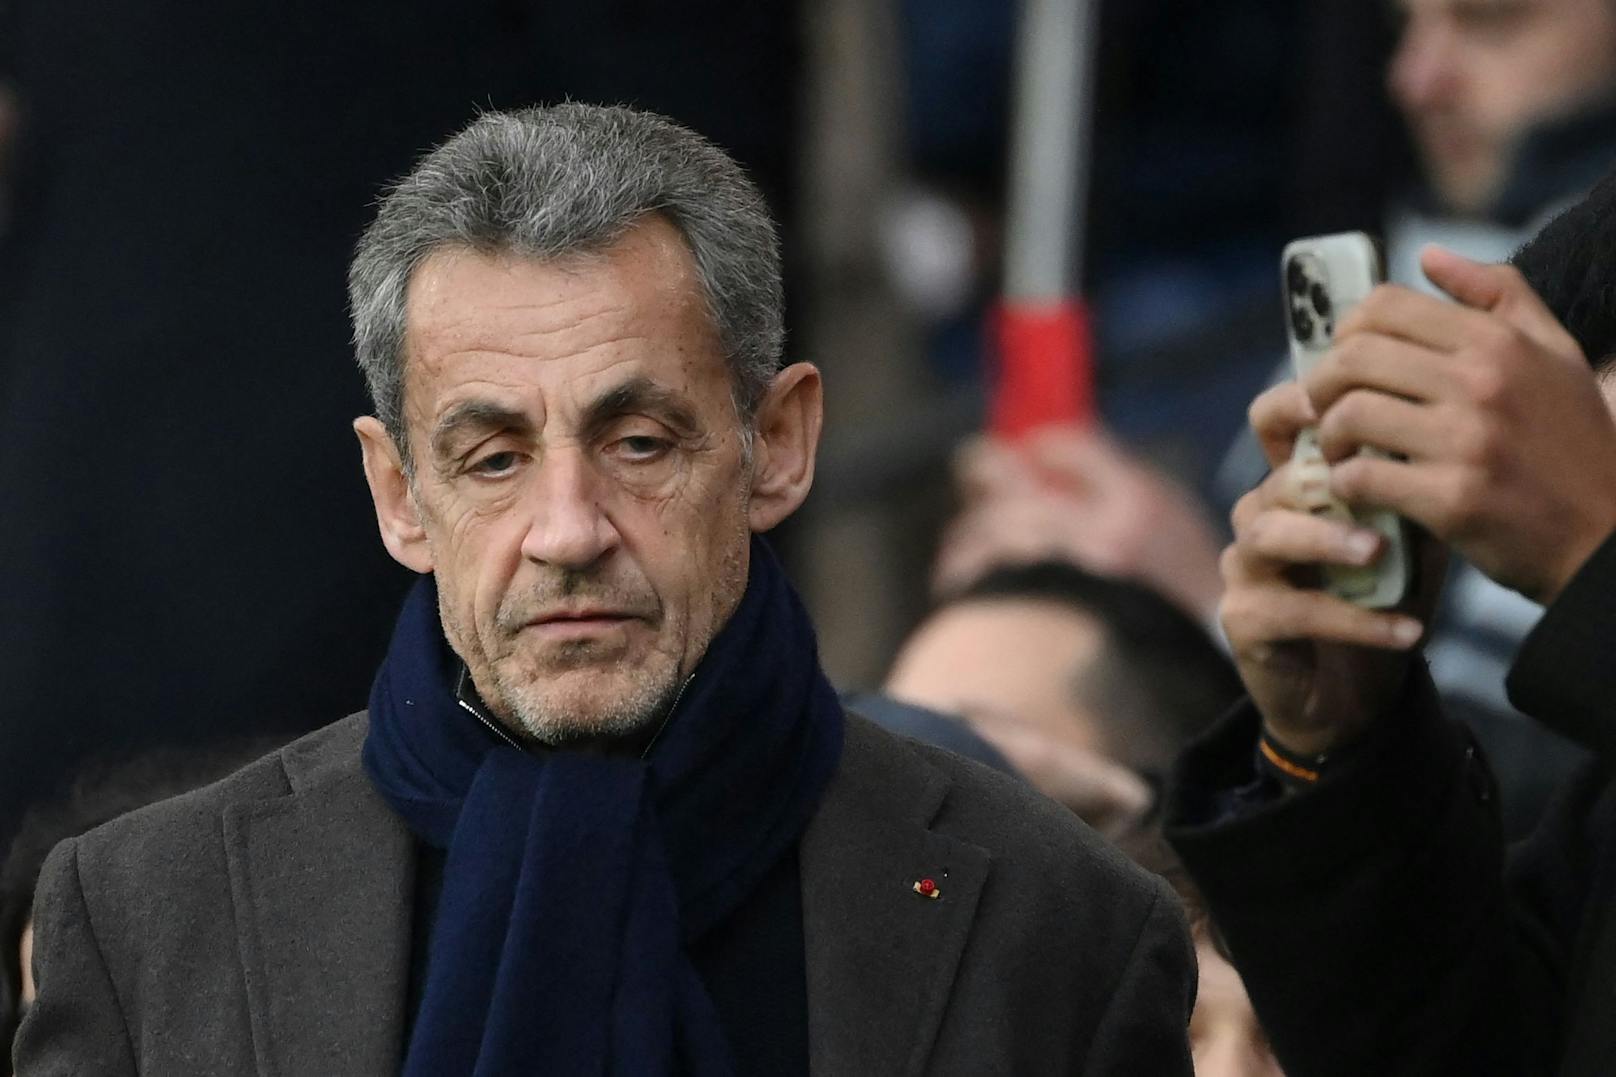 Das Berufungsgericht verhängte außerdem ein dreijähriges Verbot der Bürgerrechte für Nicolas Sarkozy, wodurch er nicht mehr wählbar ist, sowie ein dreijähriges Berufsverbot für Herzog.